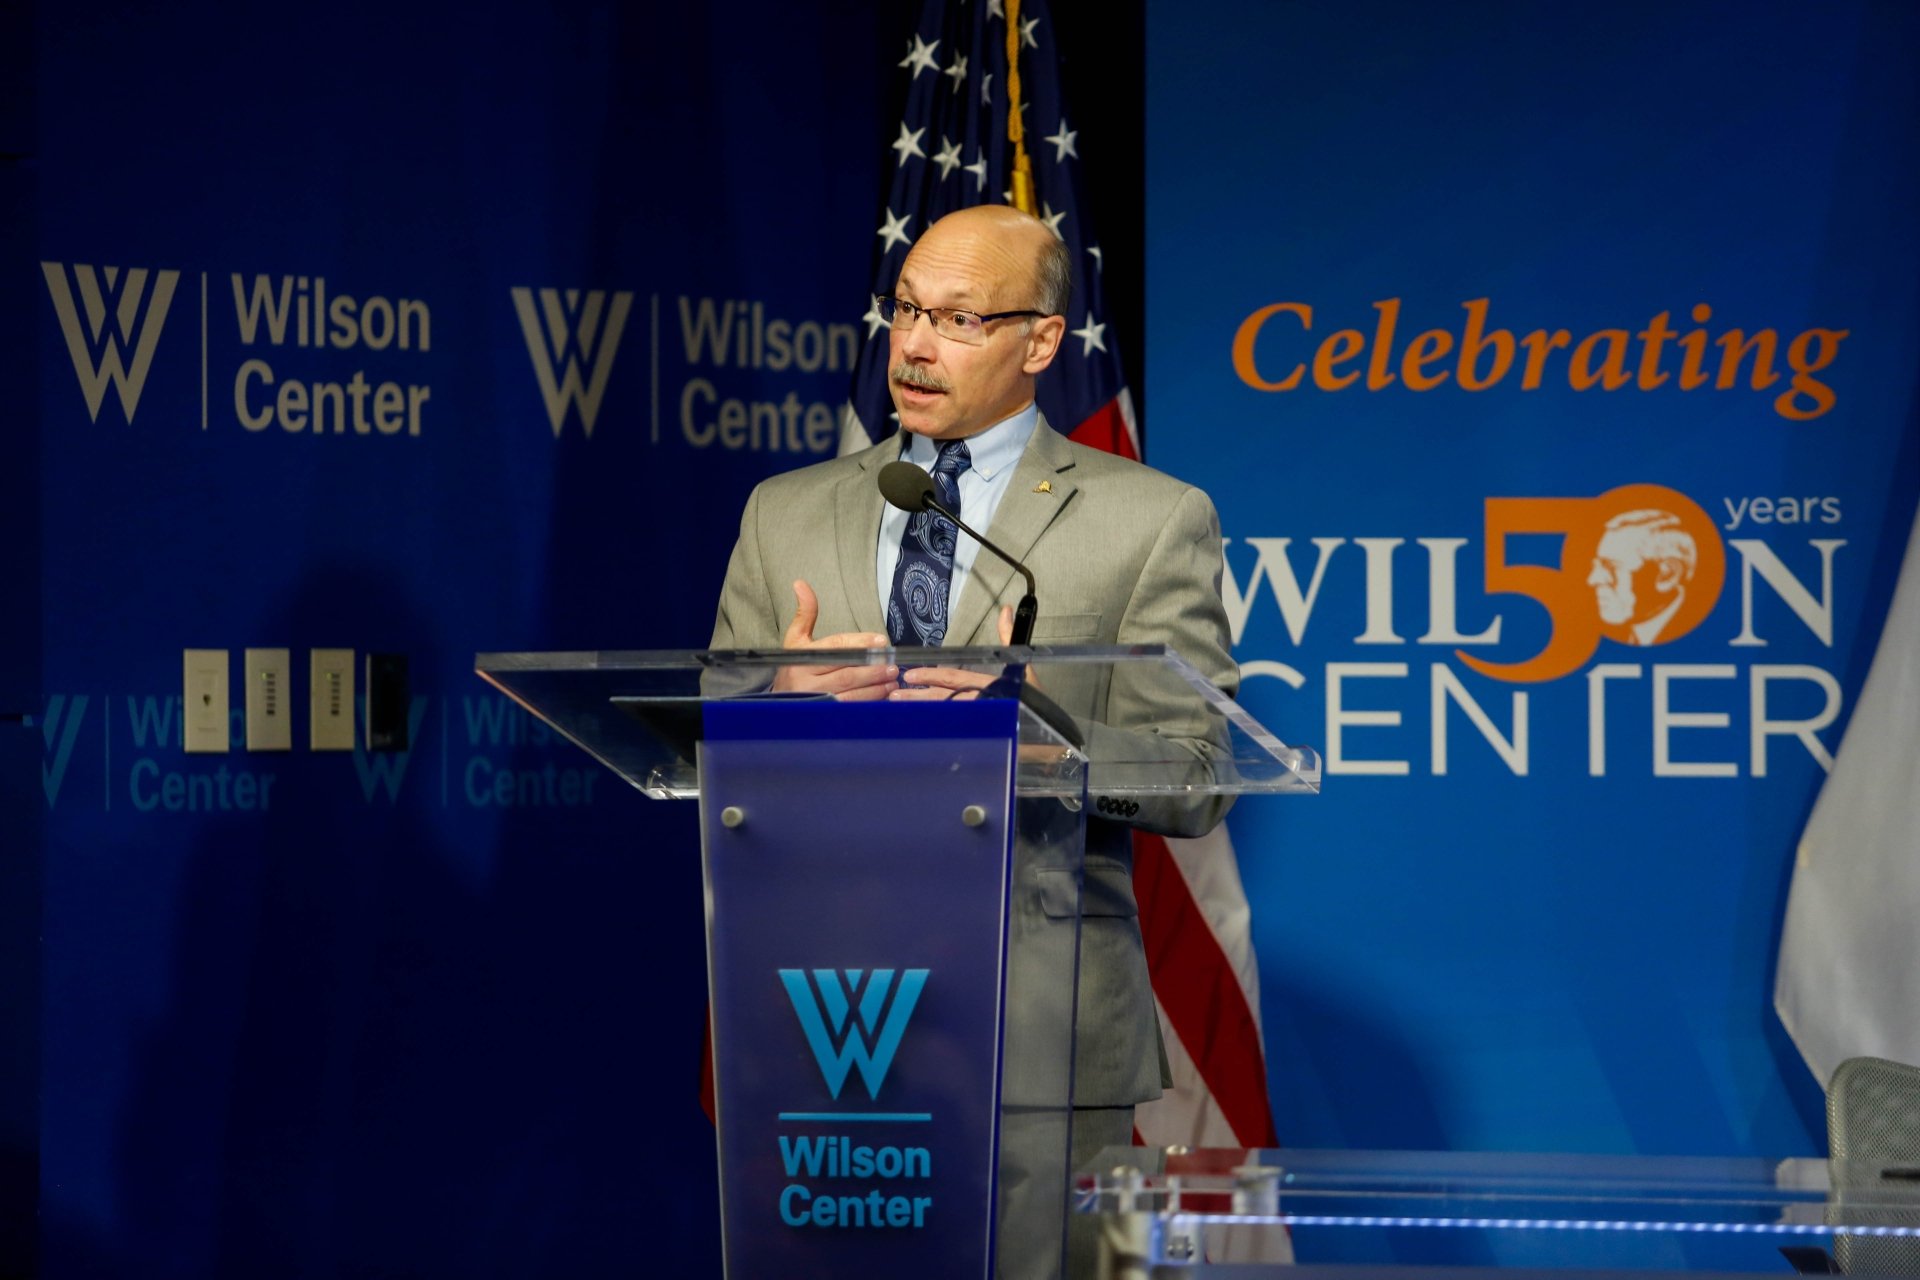 Sfarga Speaking at Wilson Center